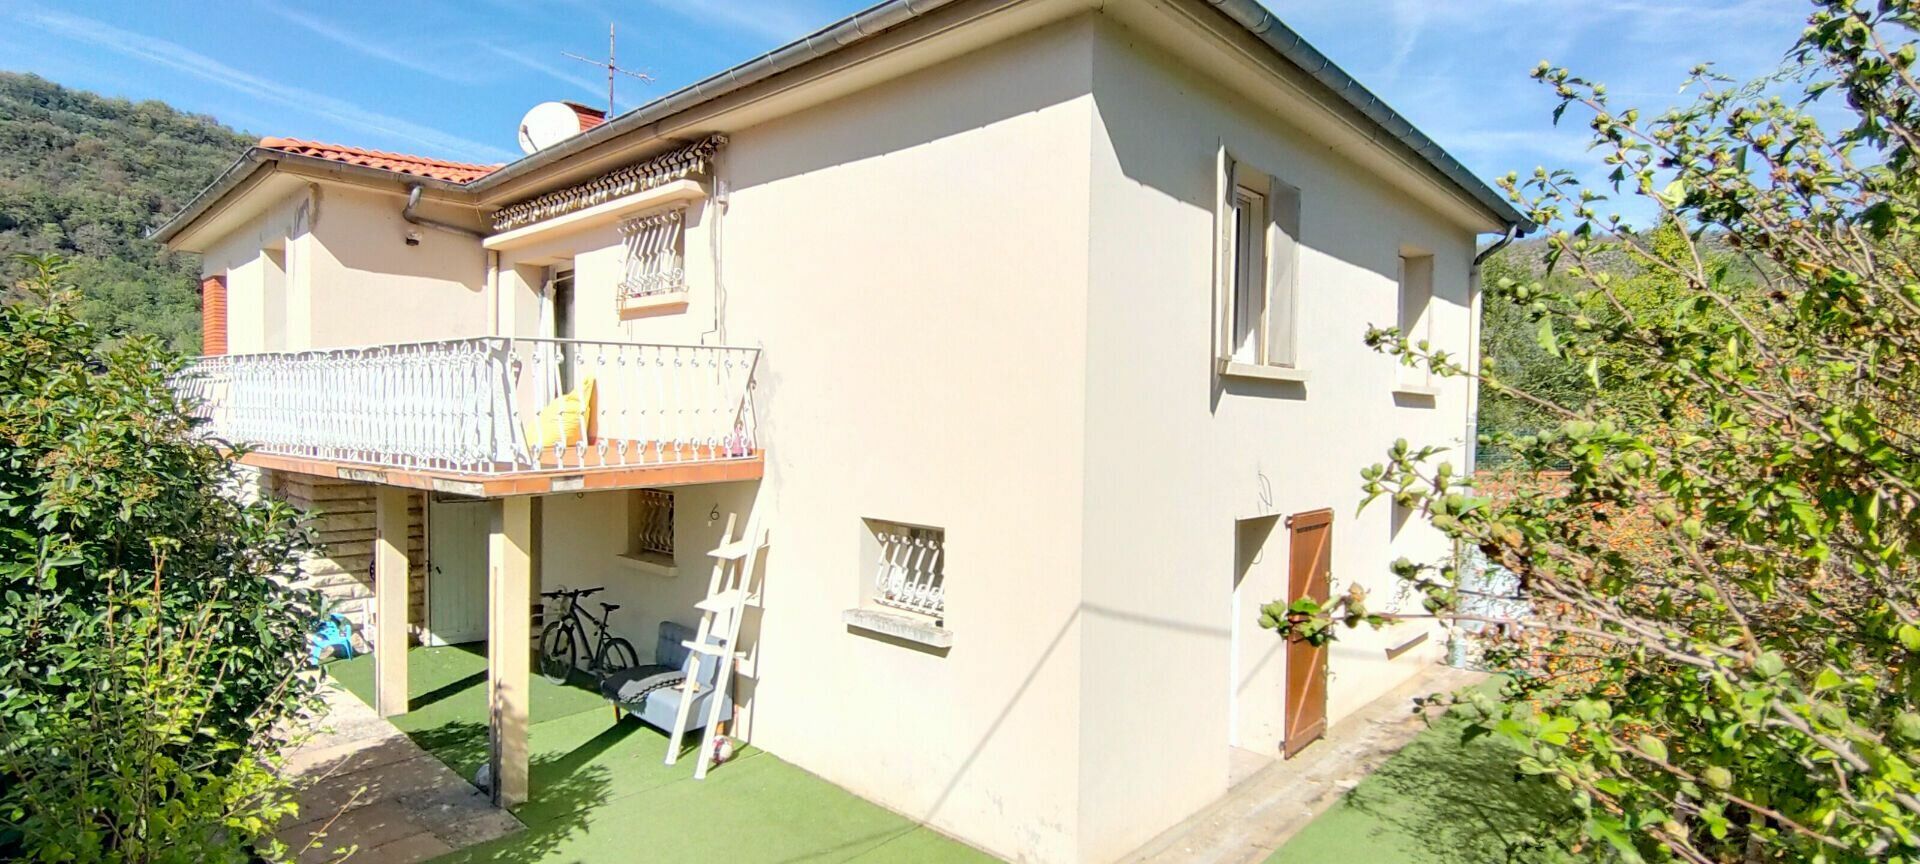 Maison à vendre 6 157m2 à Saint-Antonin-Noble-Val vignette-3